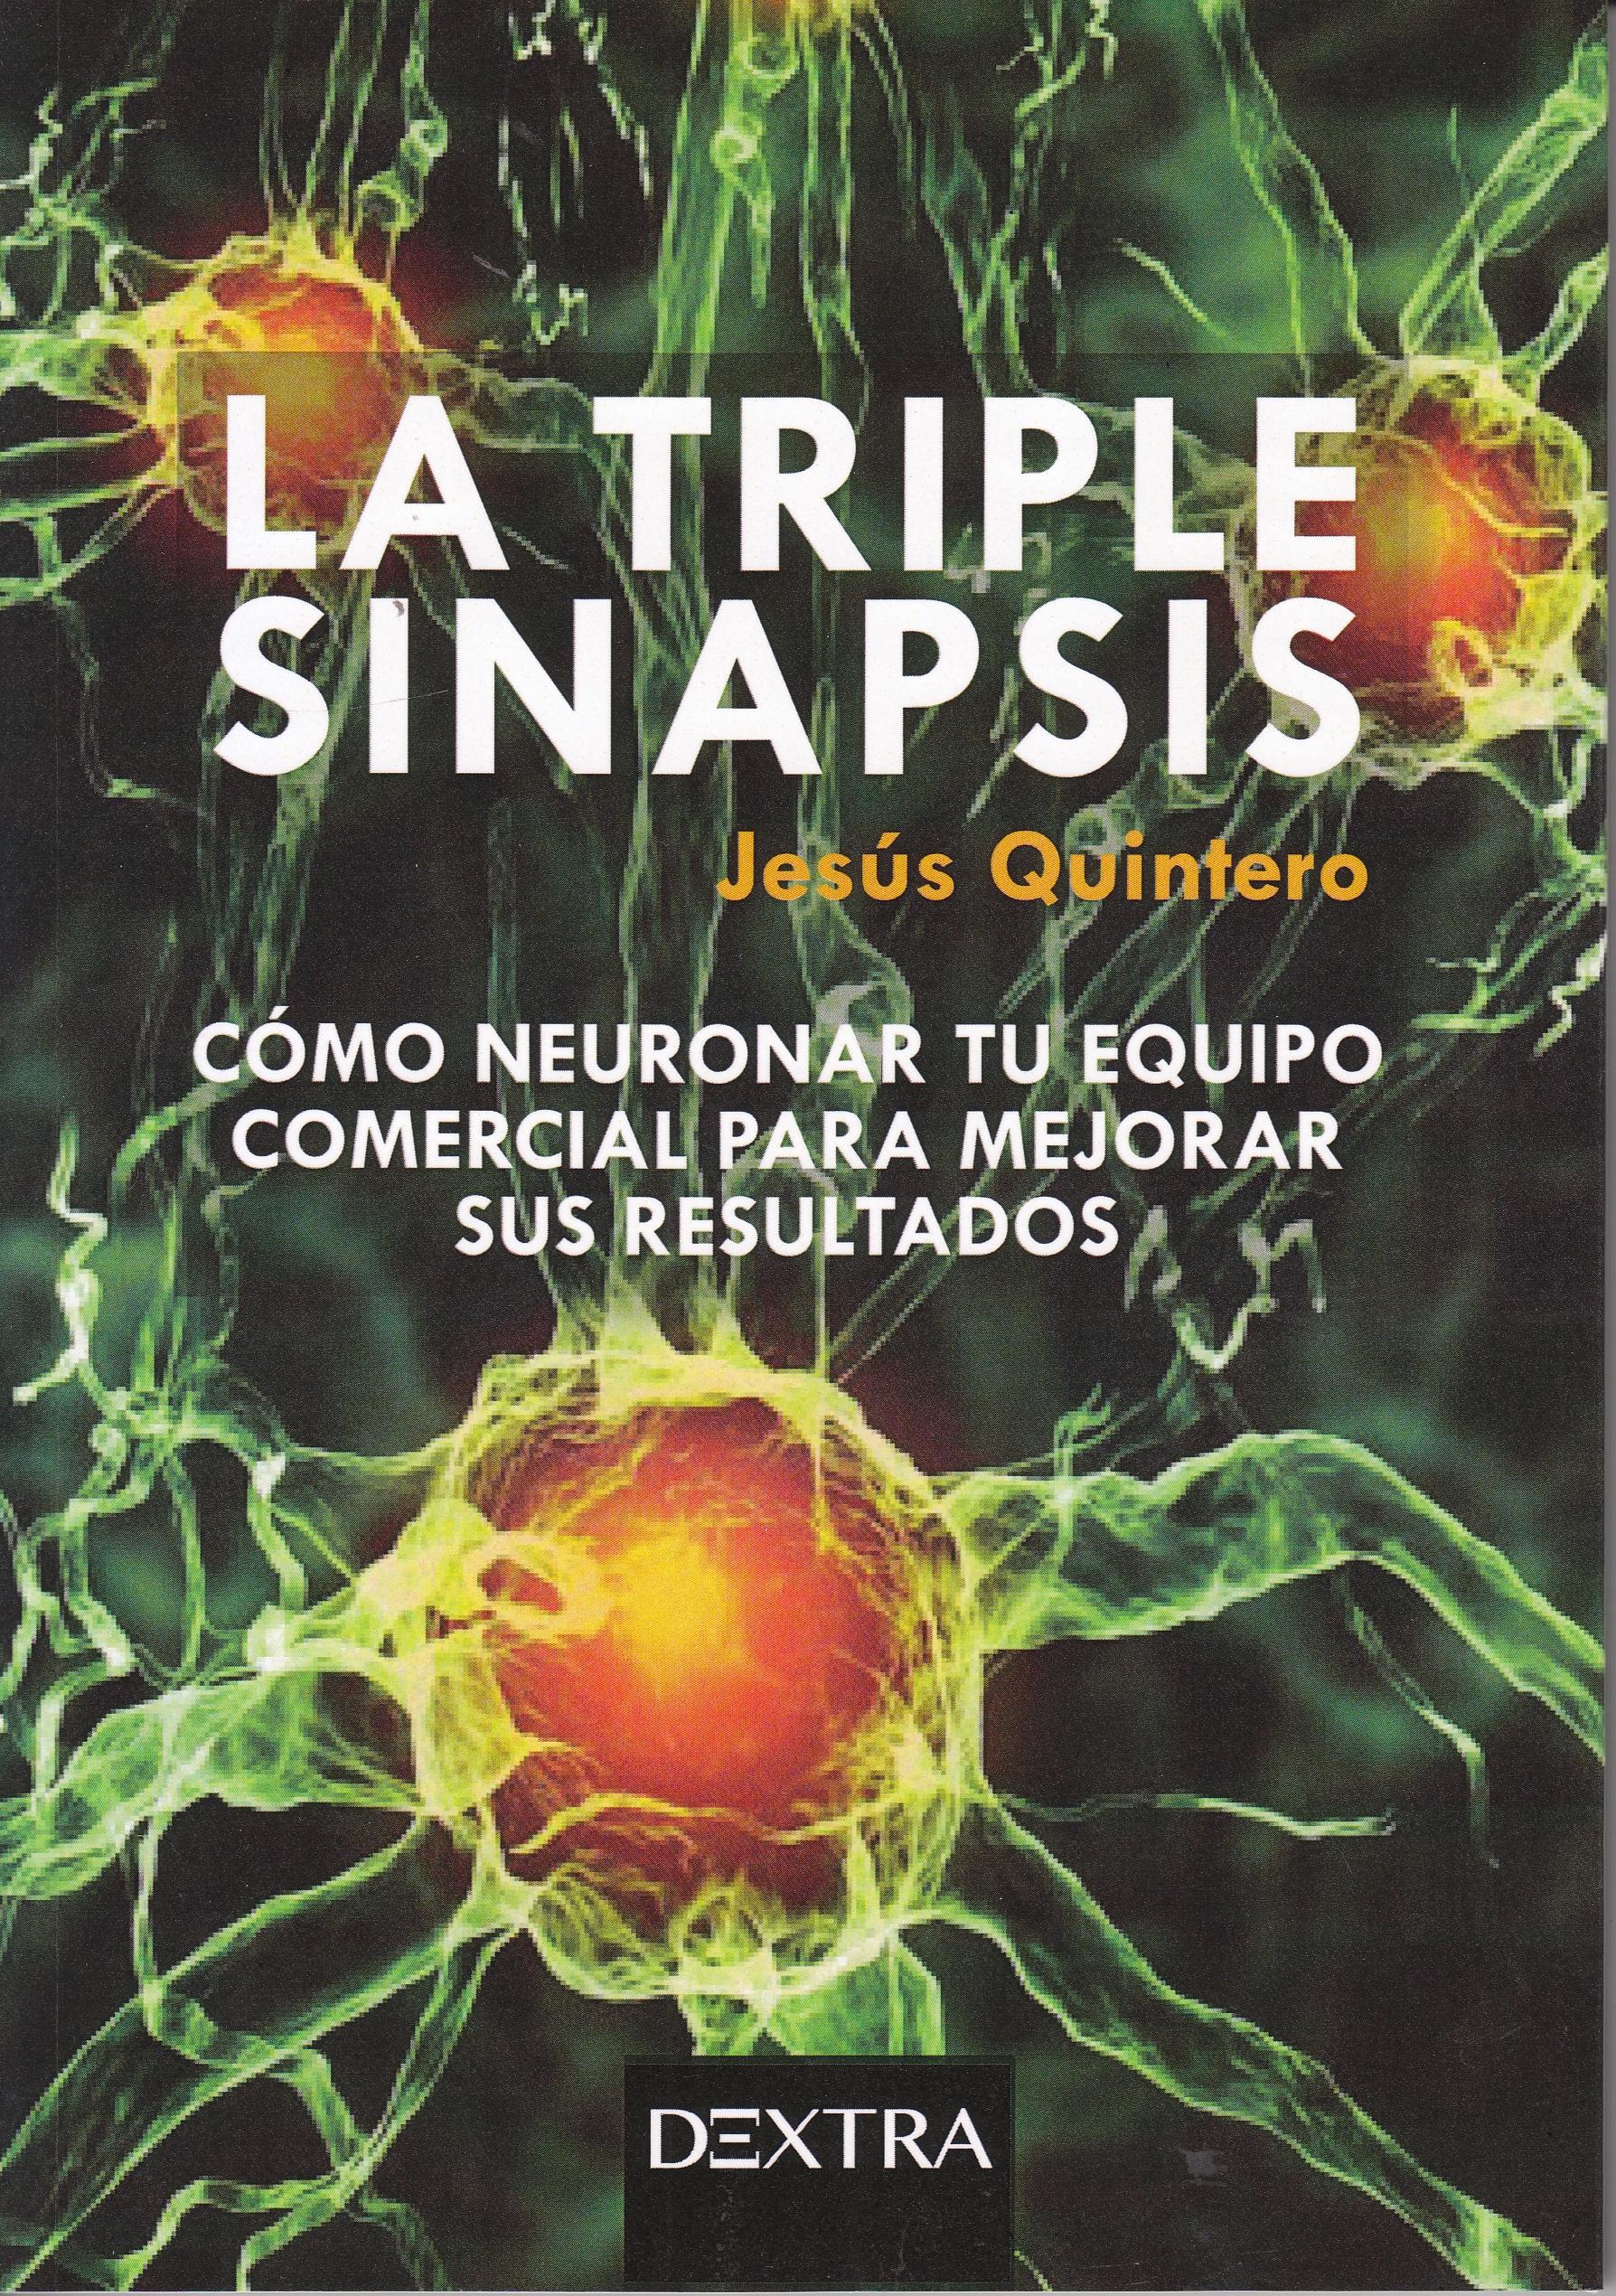 La triple sinapsis "Cómo neuronar tu equipo comercial para mejorar sus resultados"